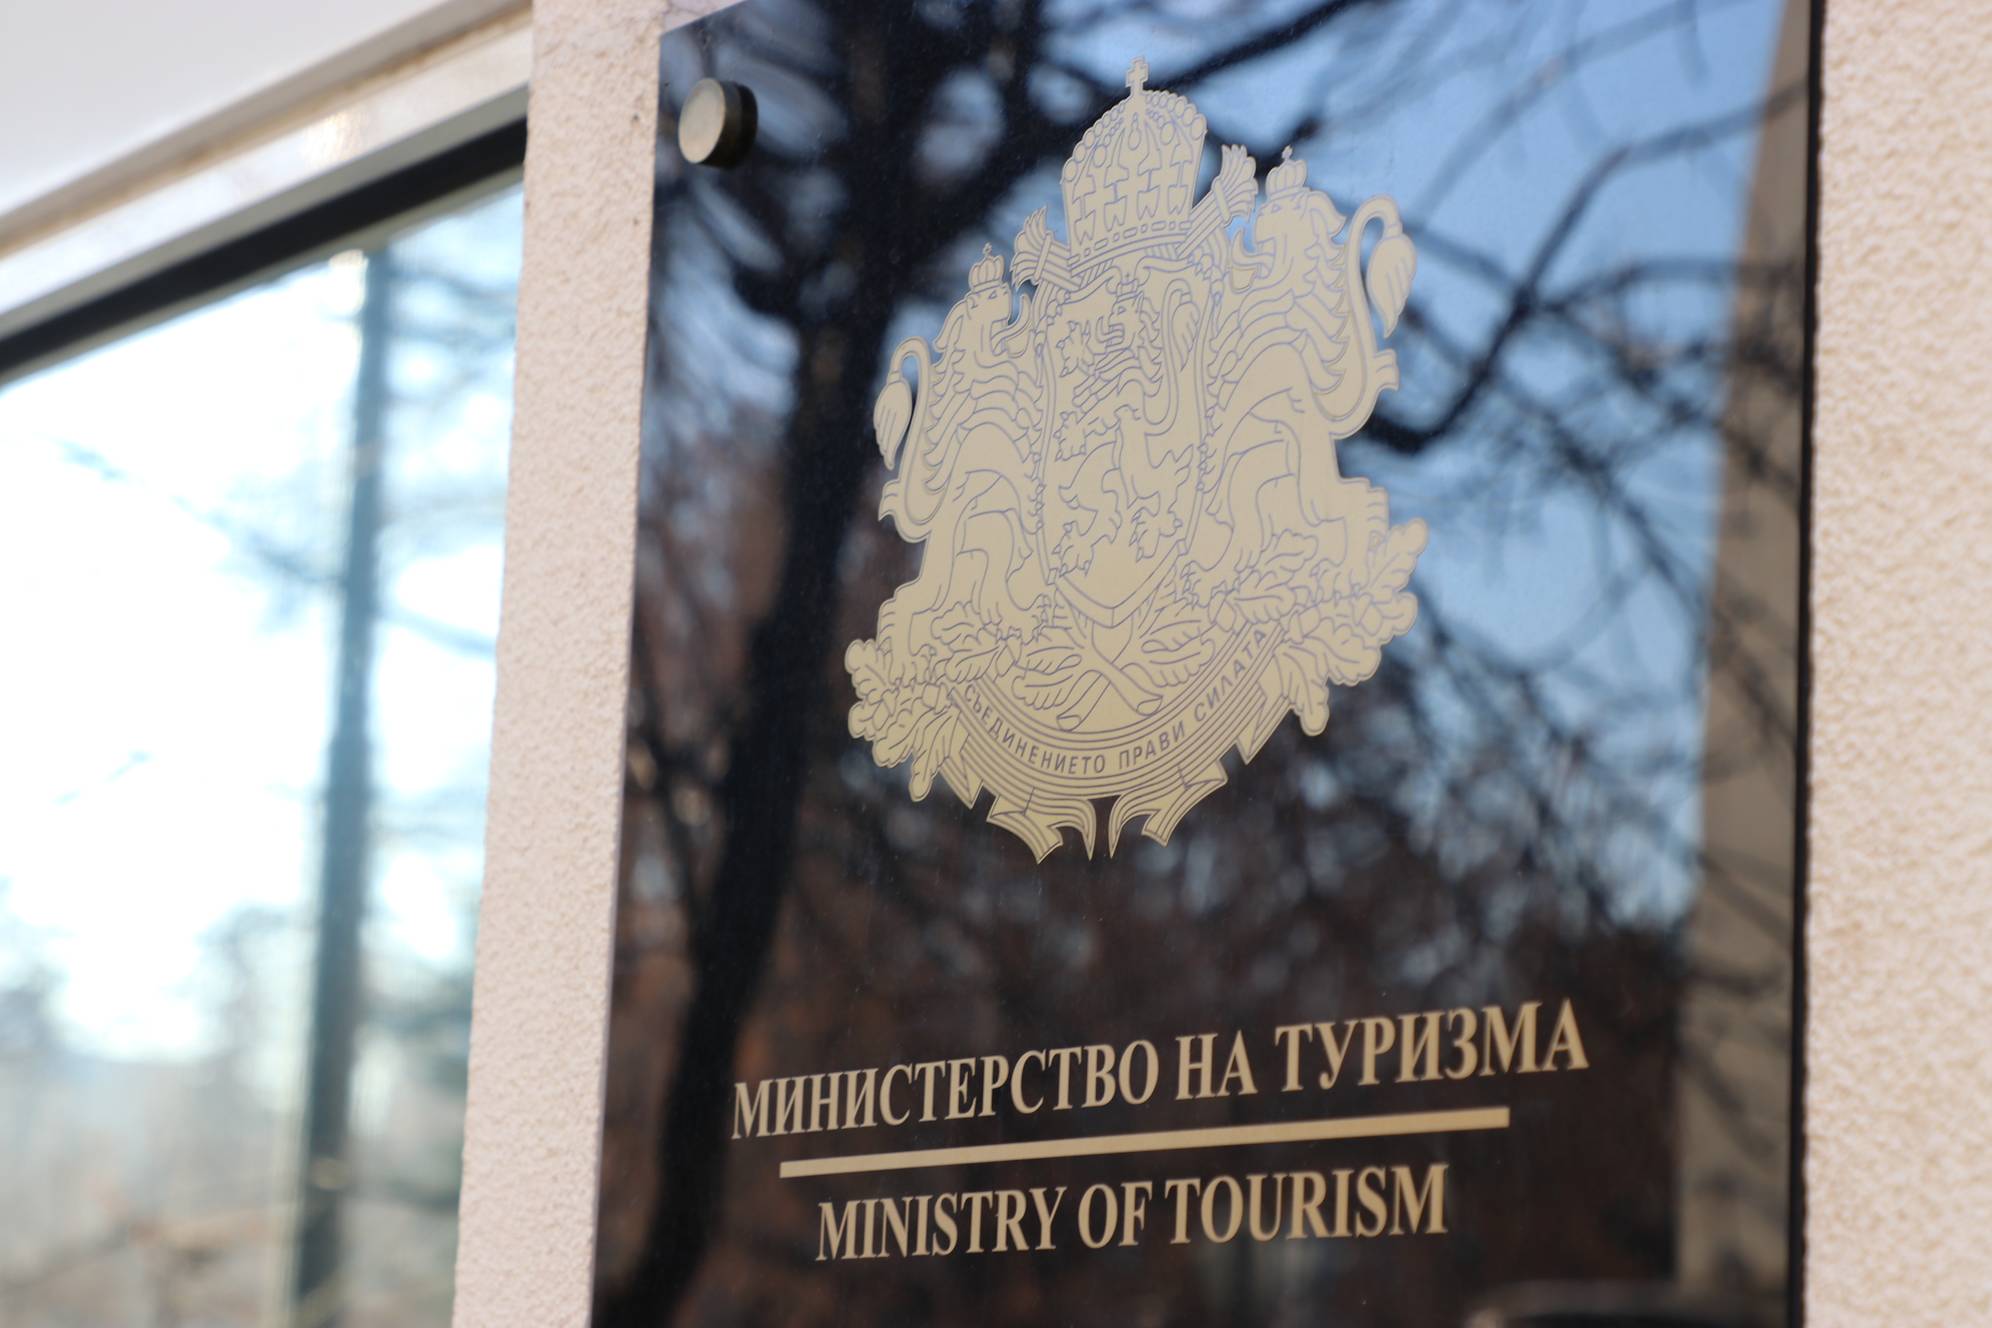  Министерство на туризма 